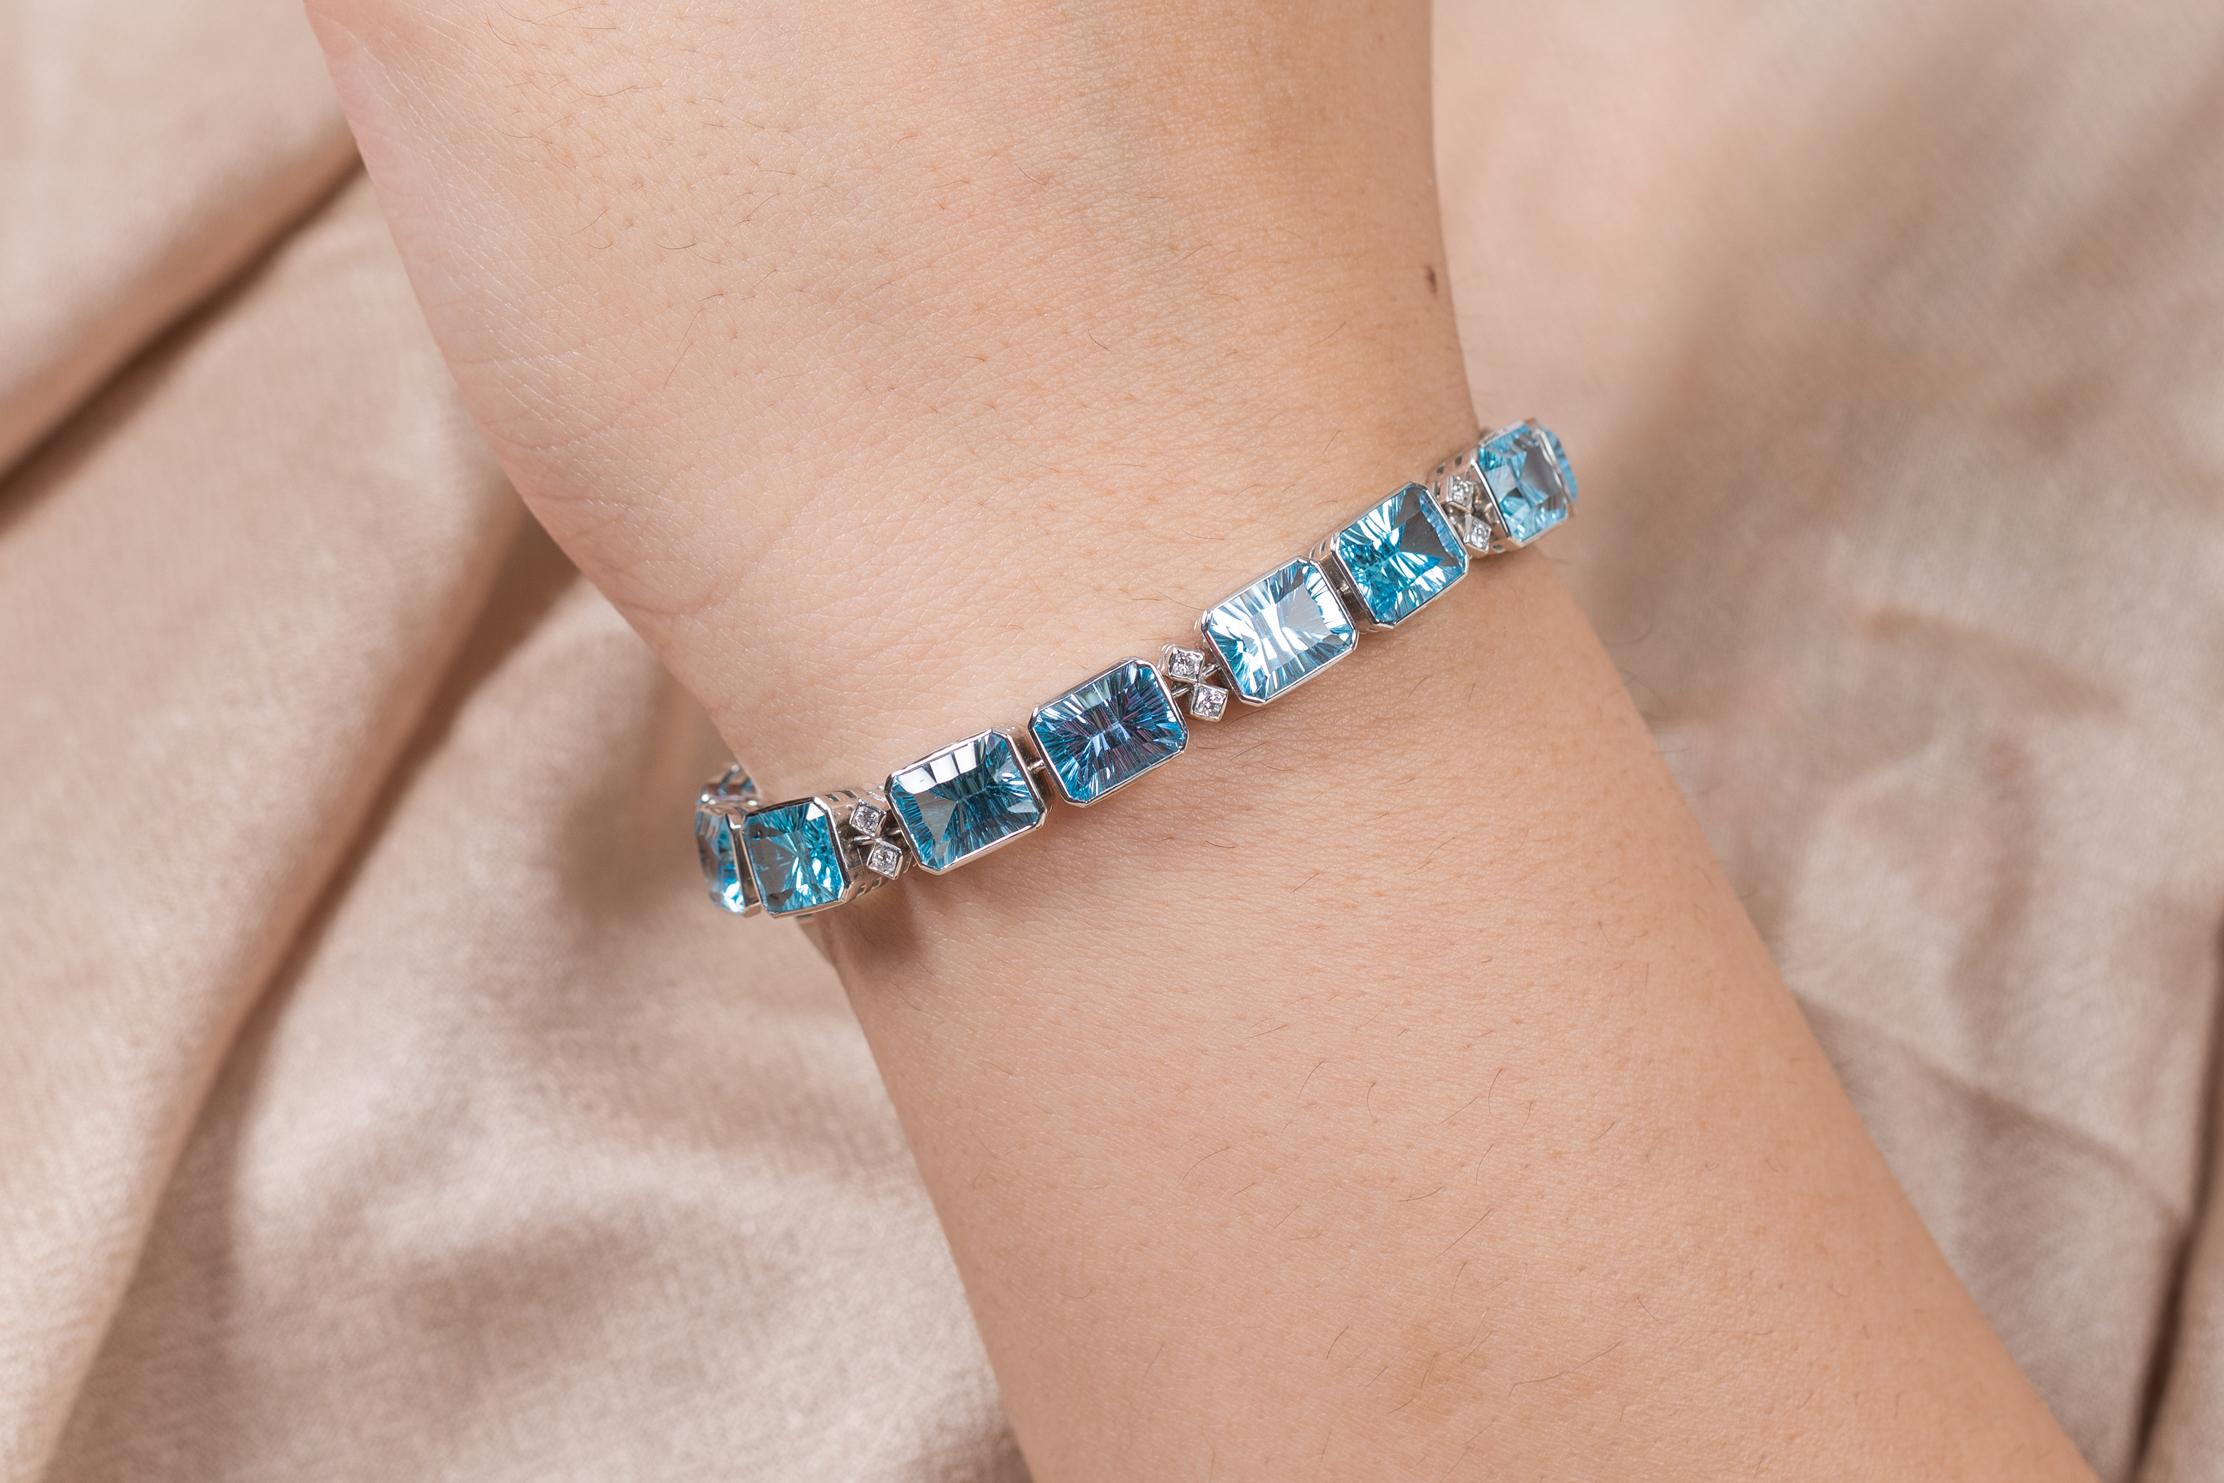 Ce bracelet de tennis en or 18 carats, composé de topazes bleues finement taillées et de diamants, met en valeur 16 topazes bleues naturelles étincelantes à l'infini, d'un poids de 40 carats. Il mesure 7.5 pouces de long. 
La topaze bleue aide à